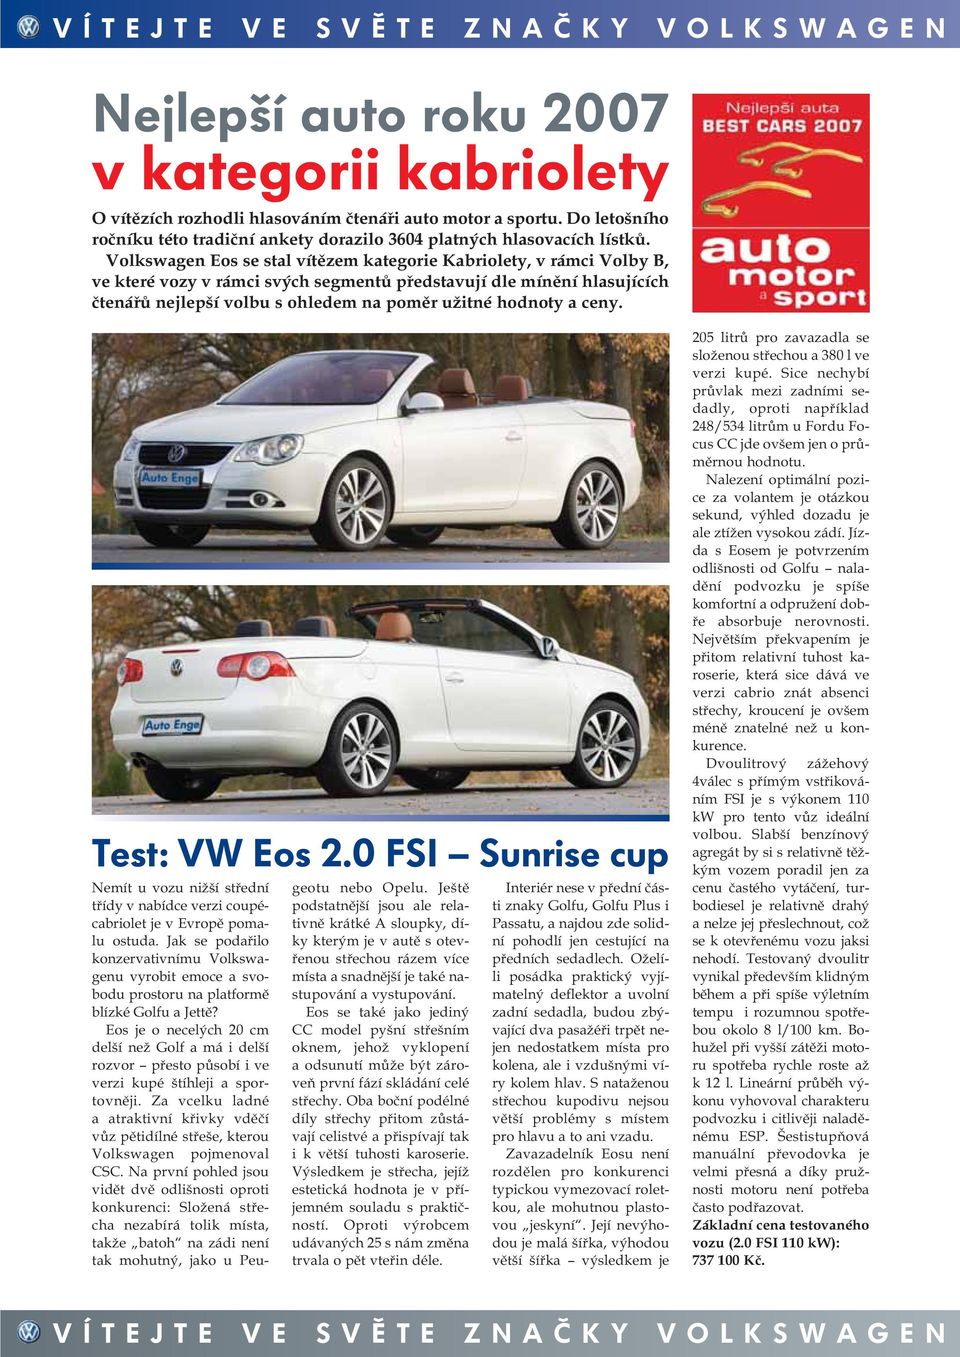 a ceny. Test: VW Eos 2.0 FSI Sunrise cup Nemít u vozu nižší střední třídy v nabídce verzi coupécabriolet je v Evropě pomalu ostuda.